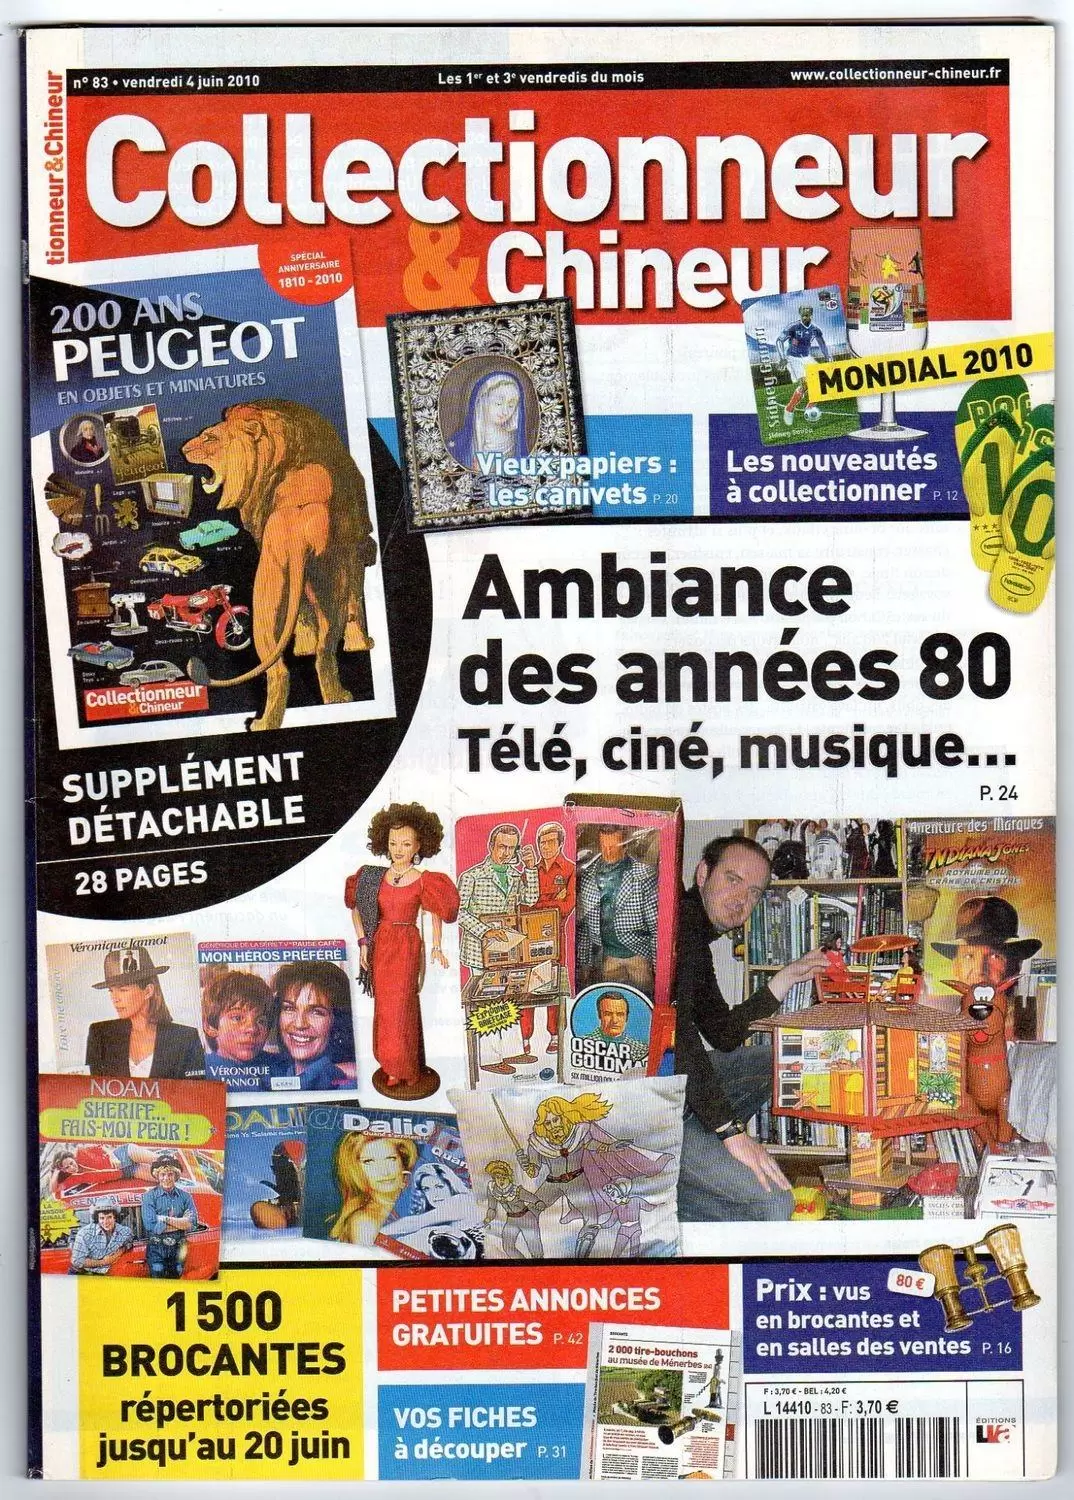 Collectionneur & Chineur - Collectionneur & Chineur n°83